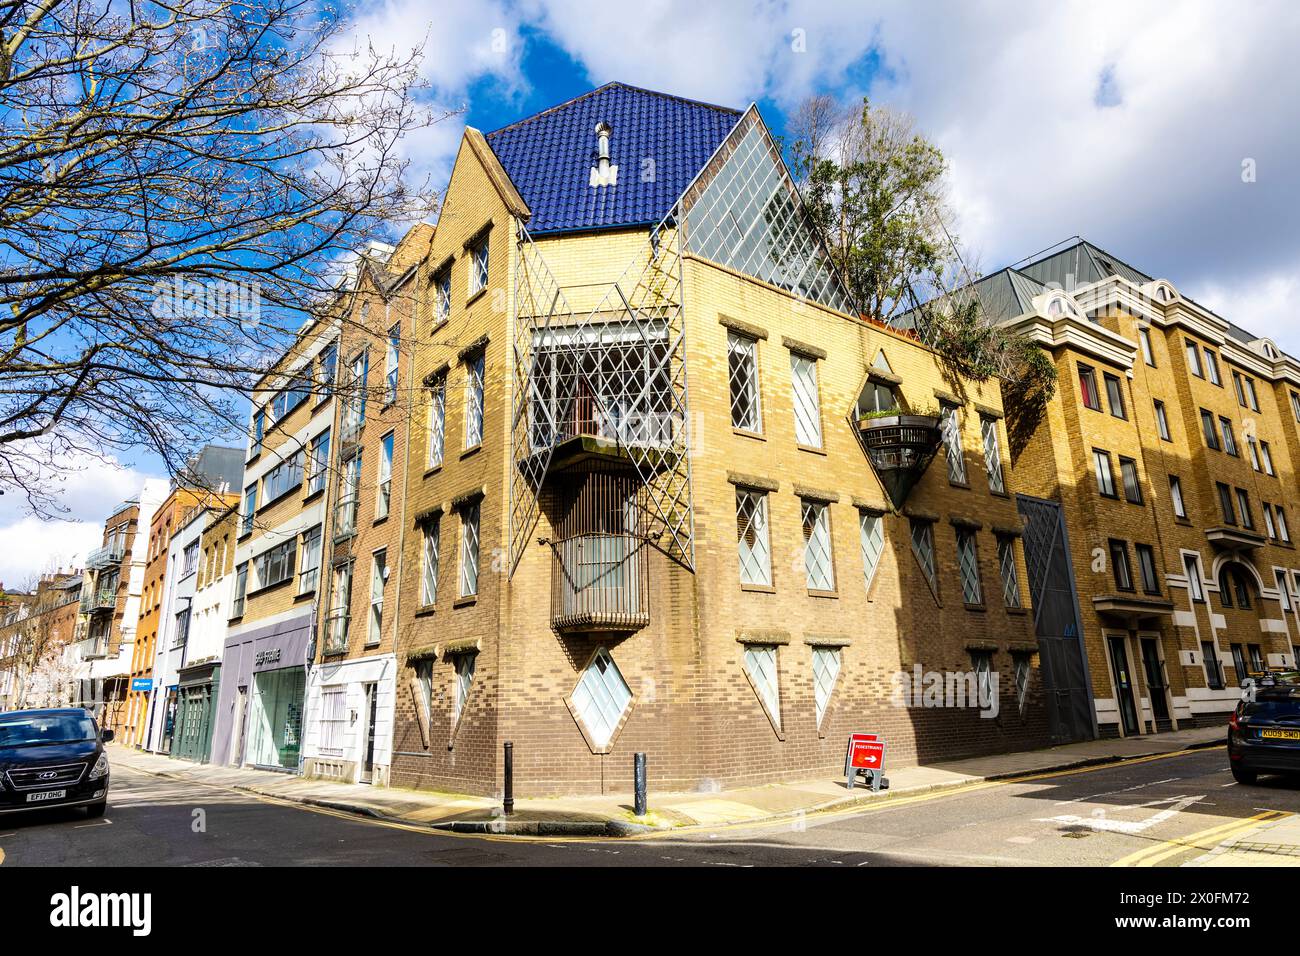 Maison de ville des années 1980, ancienne demeure de la journaliste Janet Street-porter, conçue par Piers Gough, 44 Britton Street, Londres, Angleterre Banque D'Images